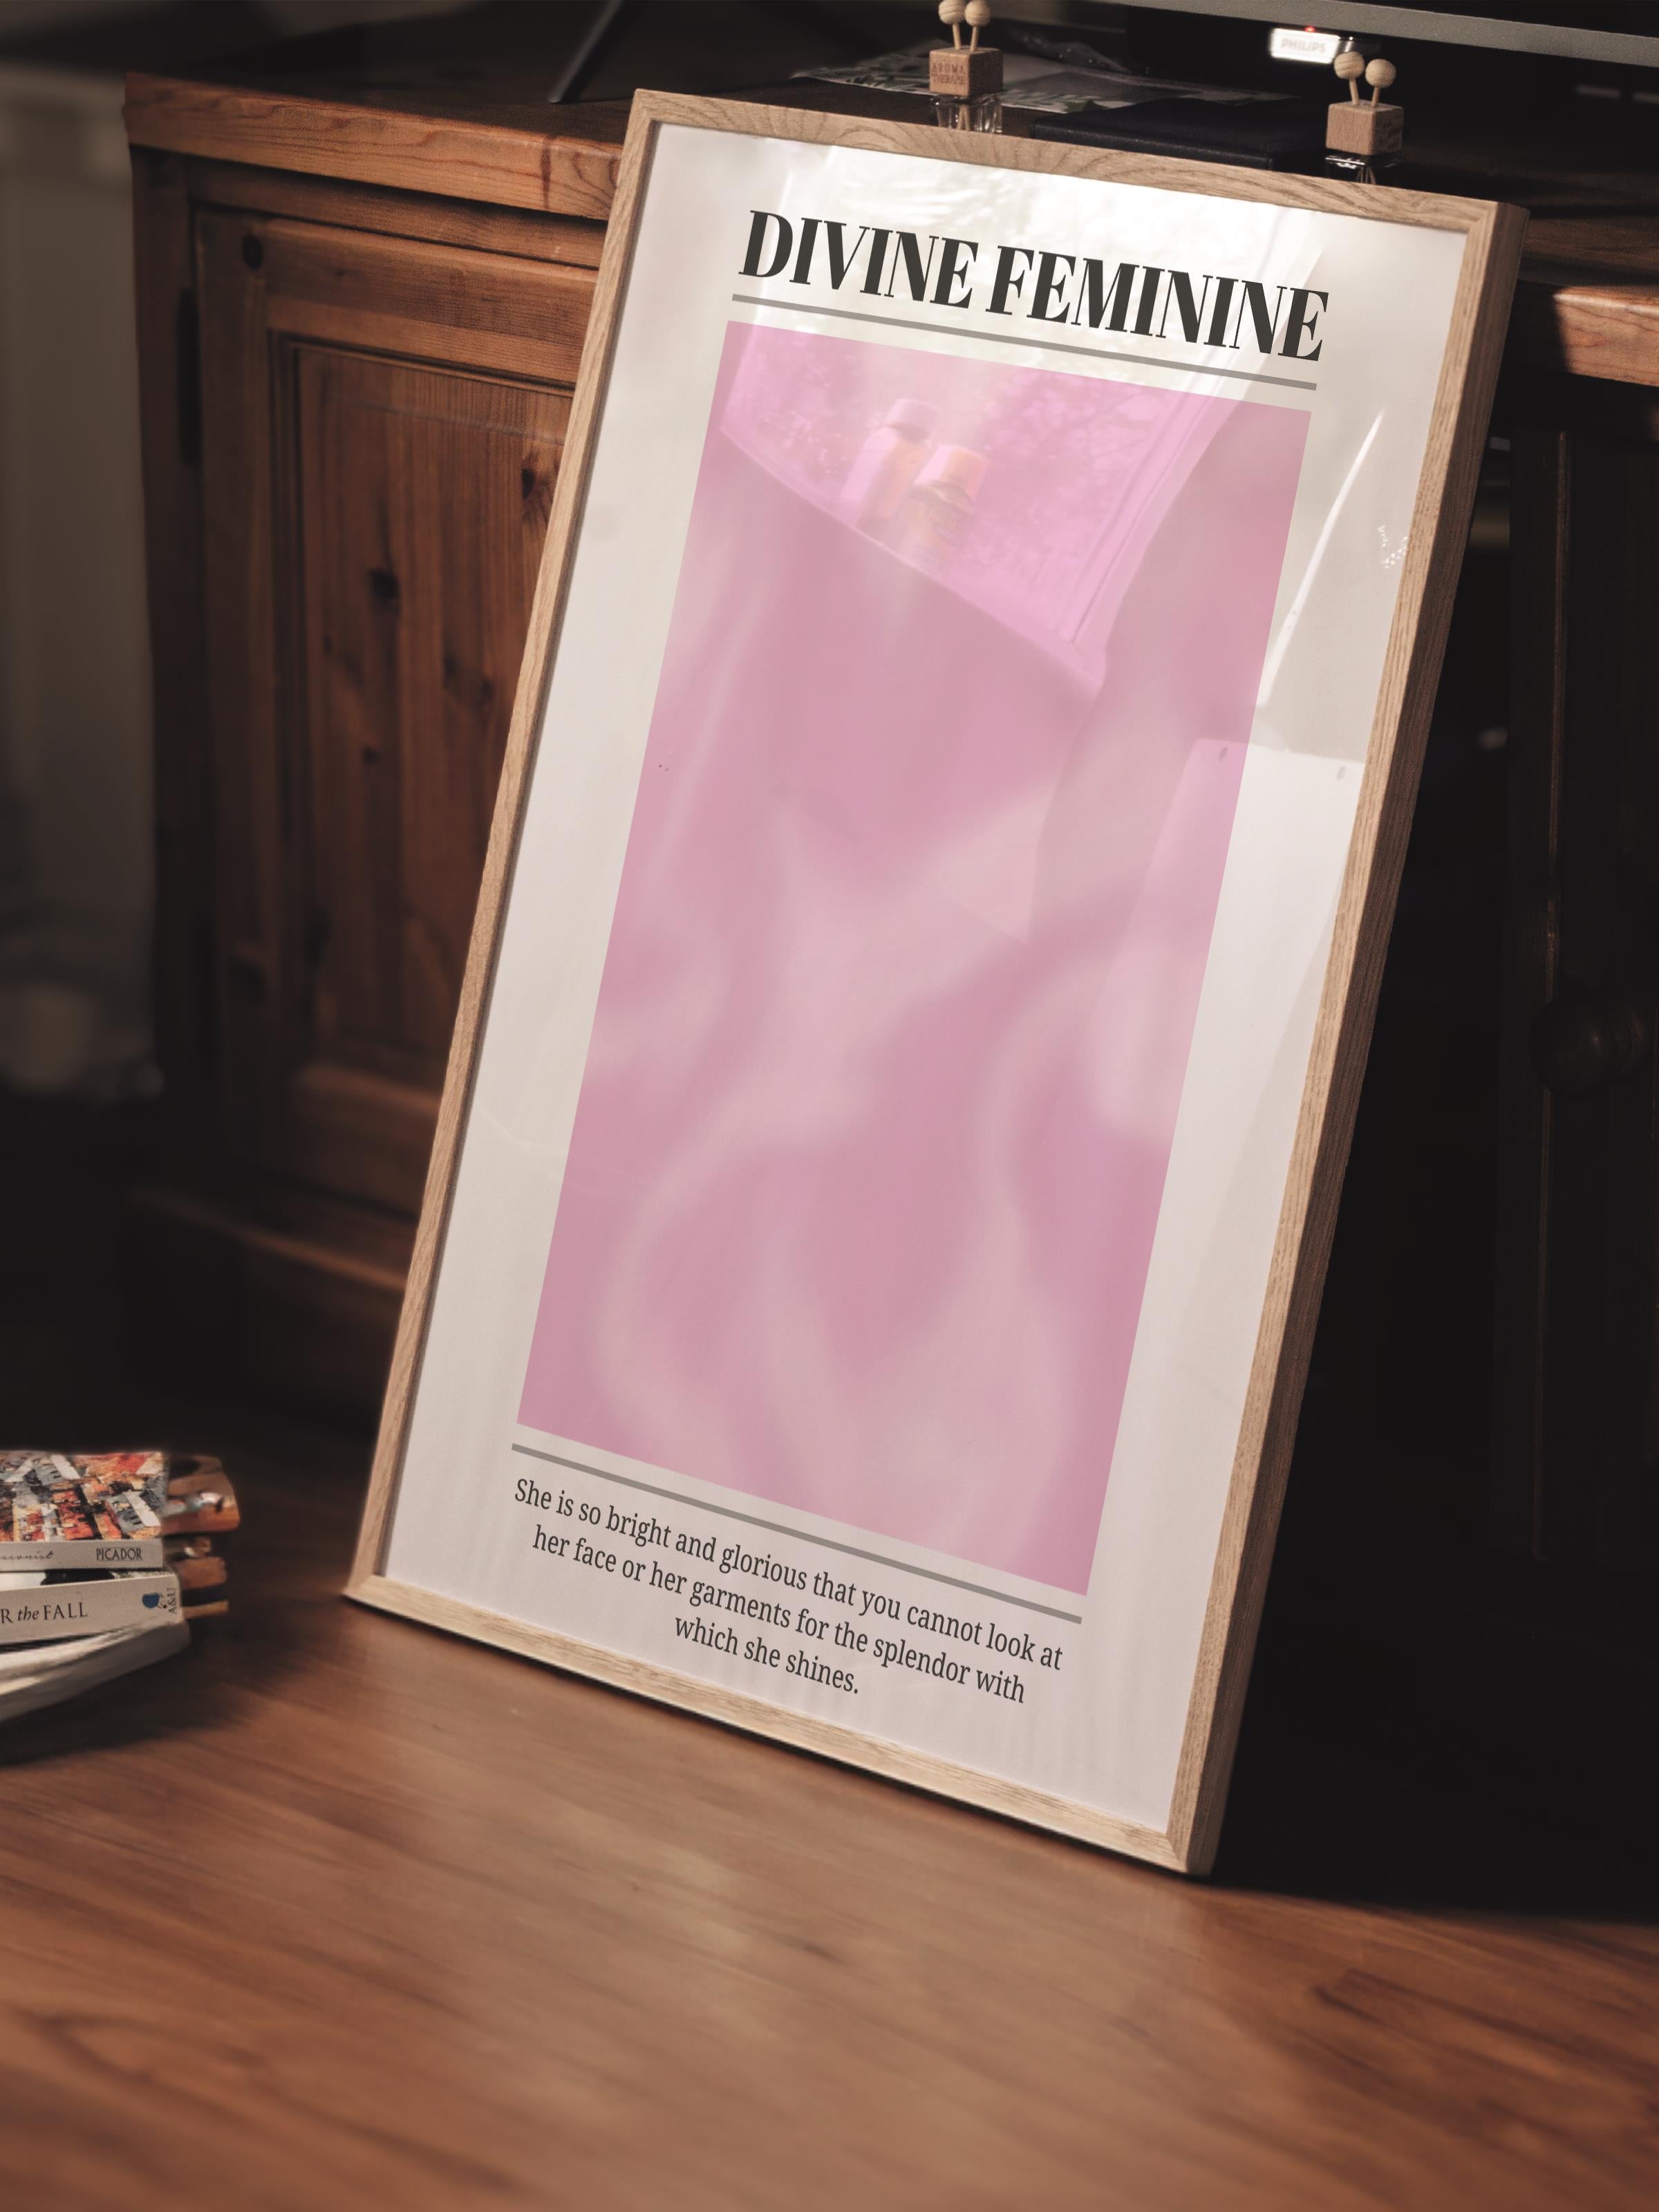 Çerçevesiz Poster, Aura Serisi NO:140 - Divine Feminine, Melek Numaraları, Renkli Poster